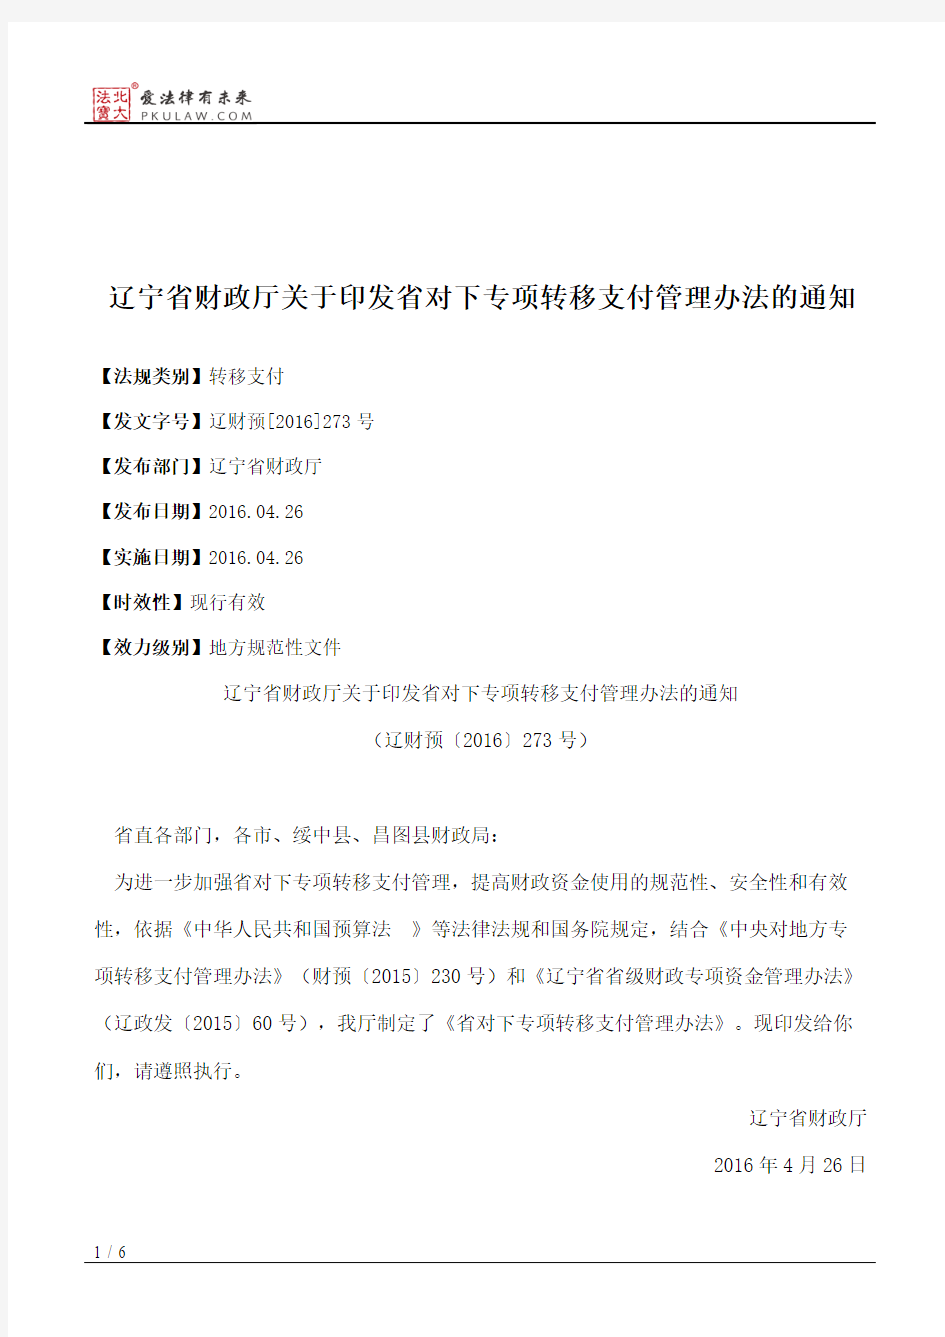 辽宁省财政厅关于印发省对下专项转移支付管理办法的通知